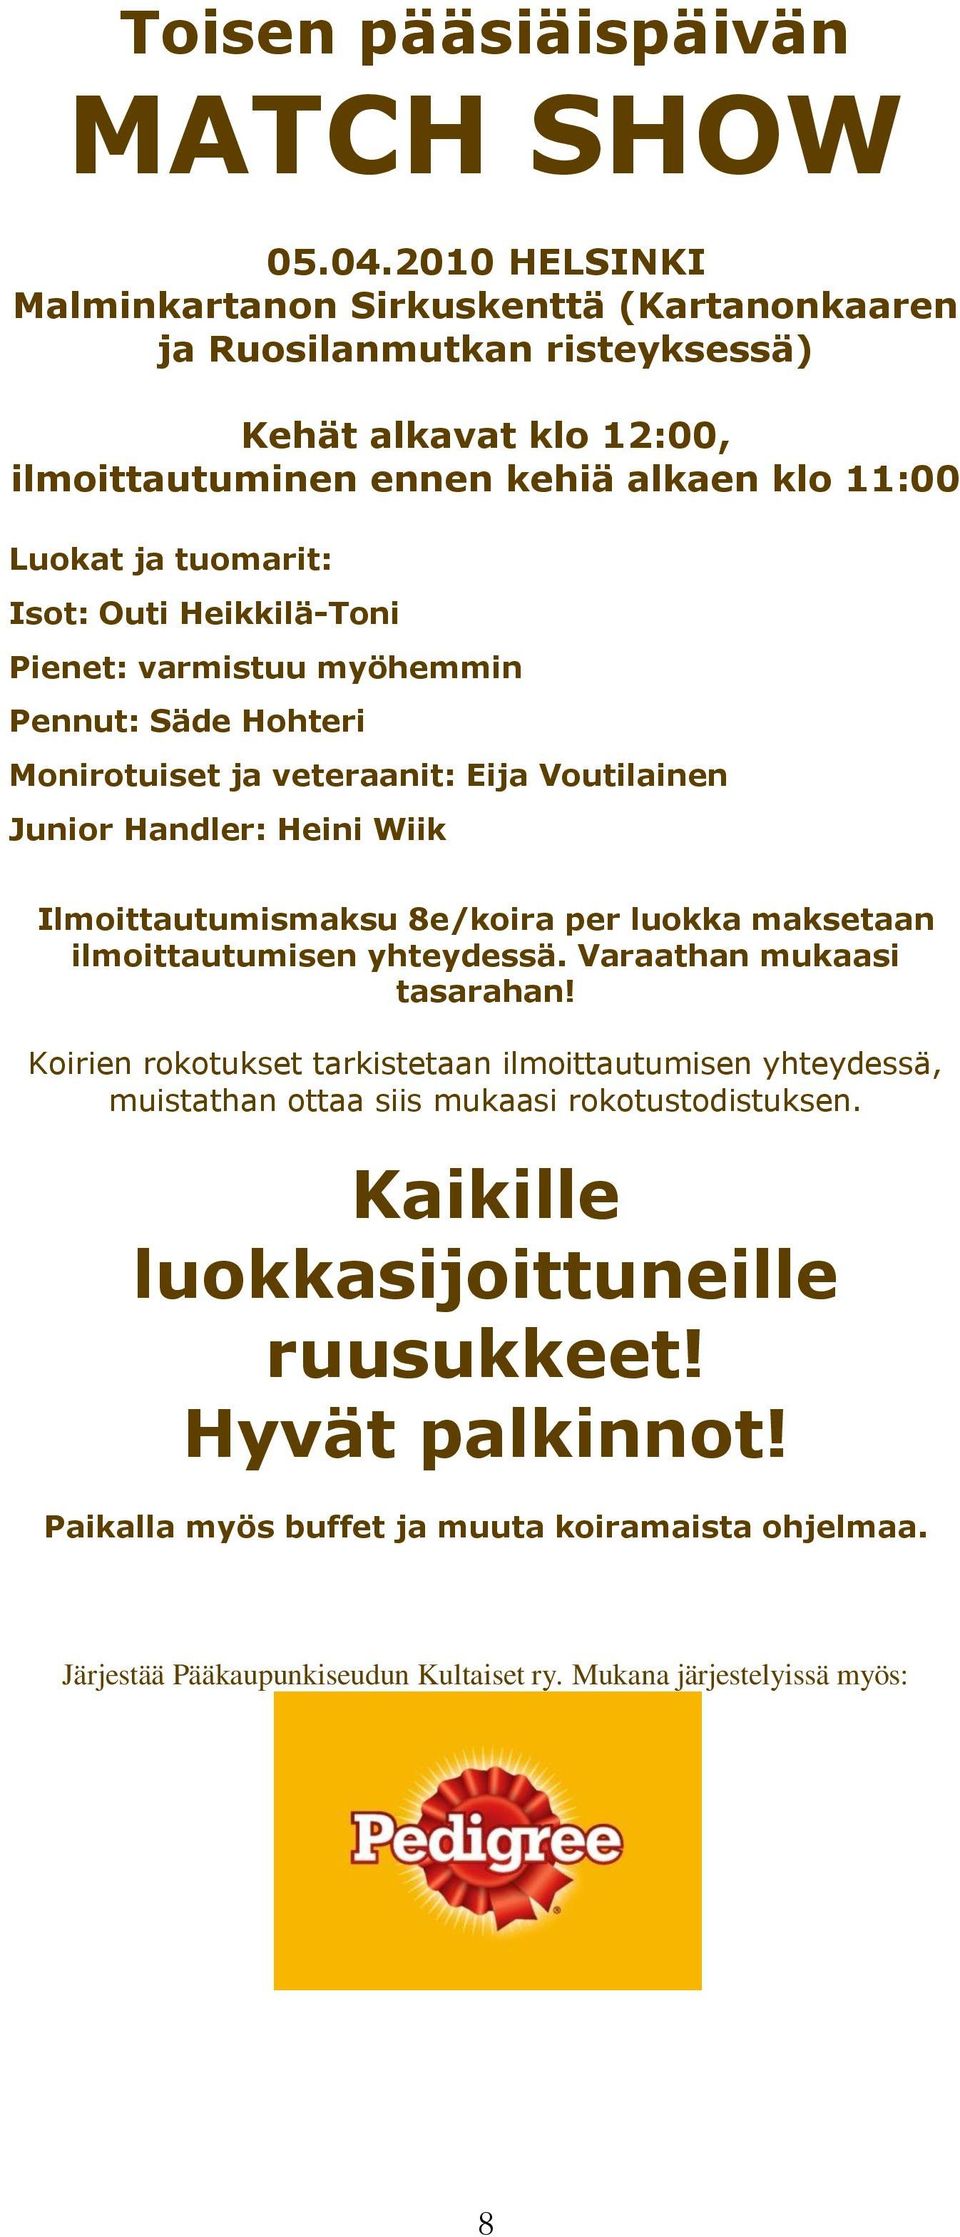 Heikkilä-Toni Pienet: varmistuu myöhemmin Pennut: Säde Hohteri Monirotuiset ja veteraanit: Eija Voutilainen Junior Handler: Heini Wiik Ilmoittautumismaksu 8e/koira per luokka maksetaan